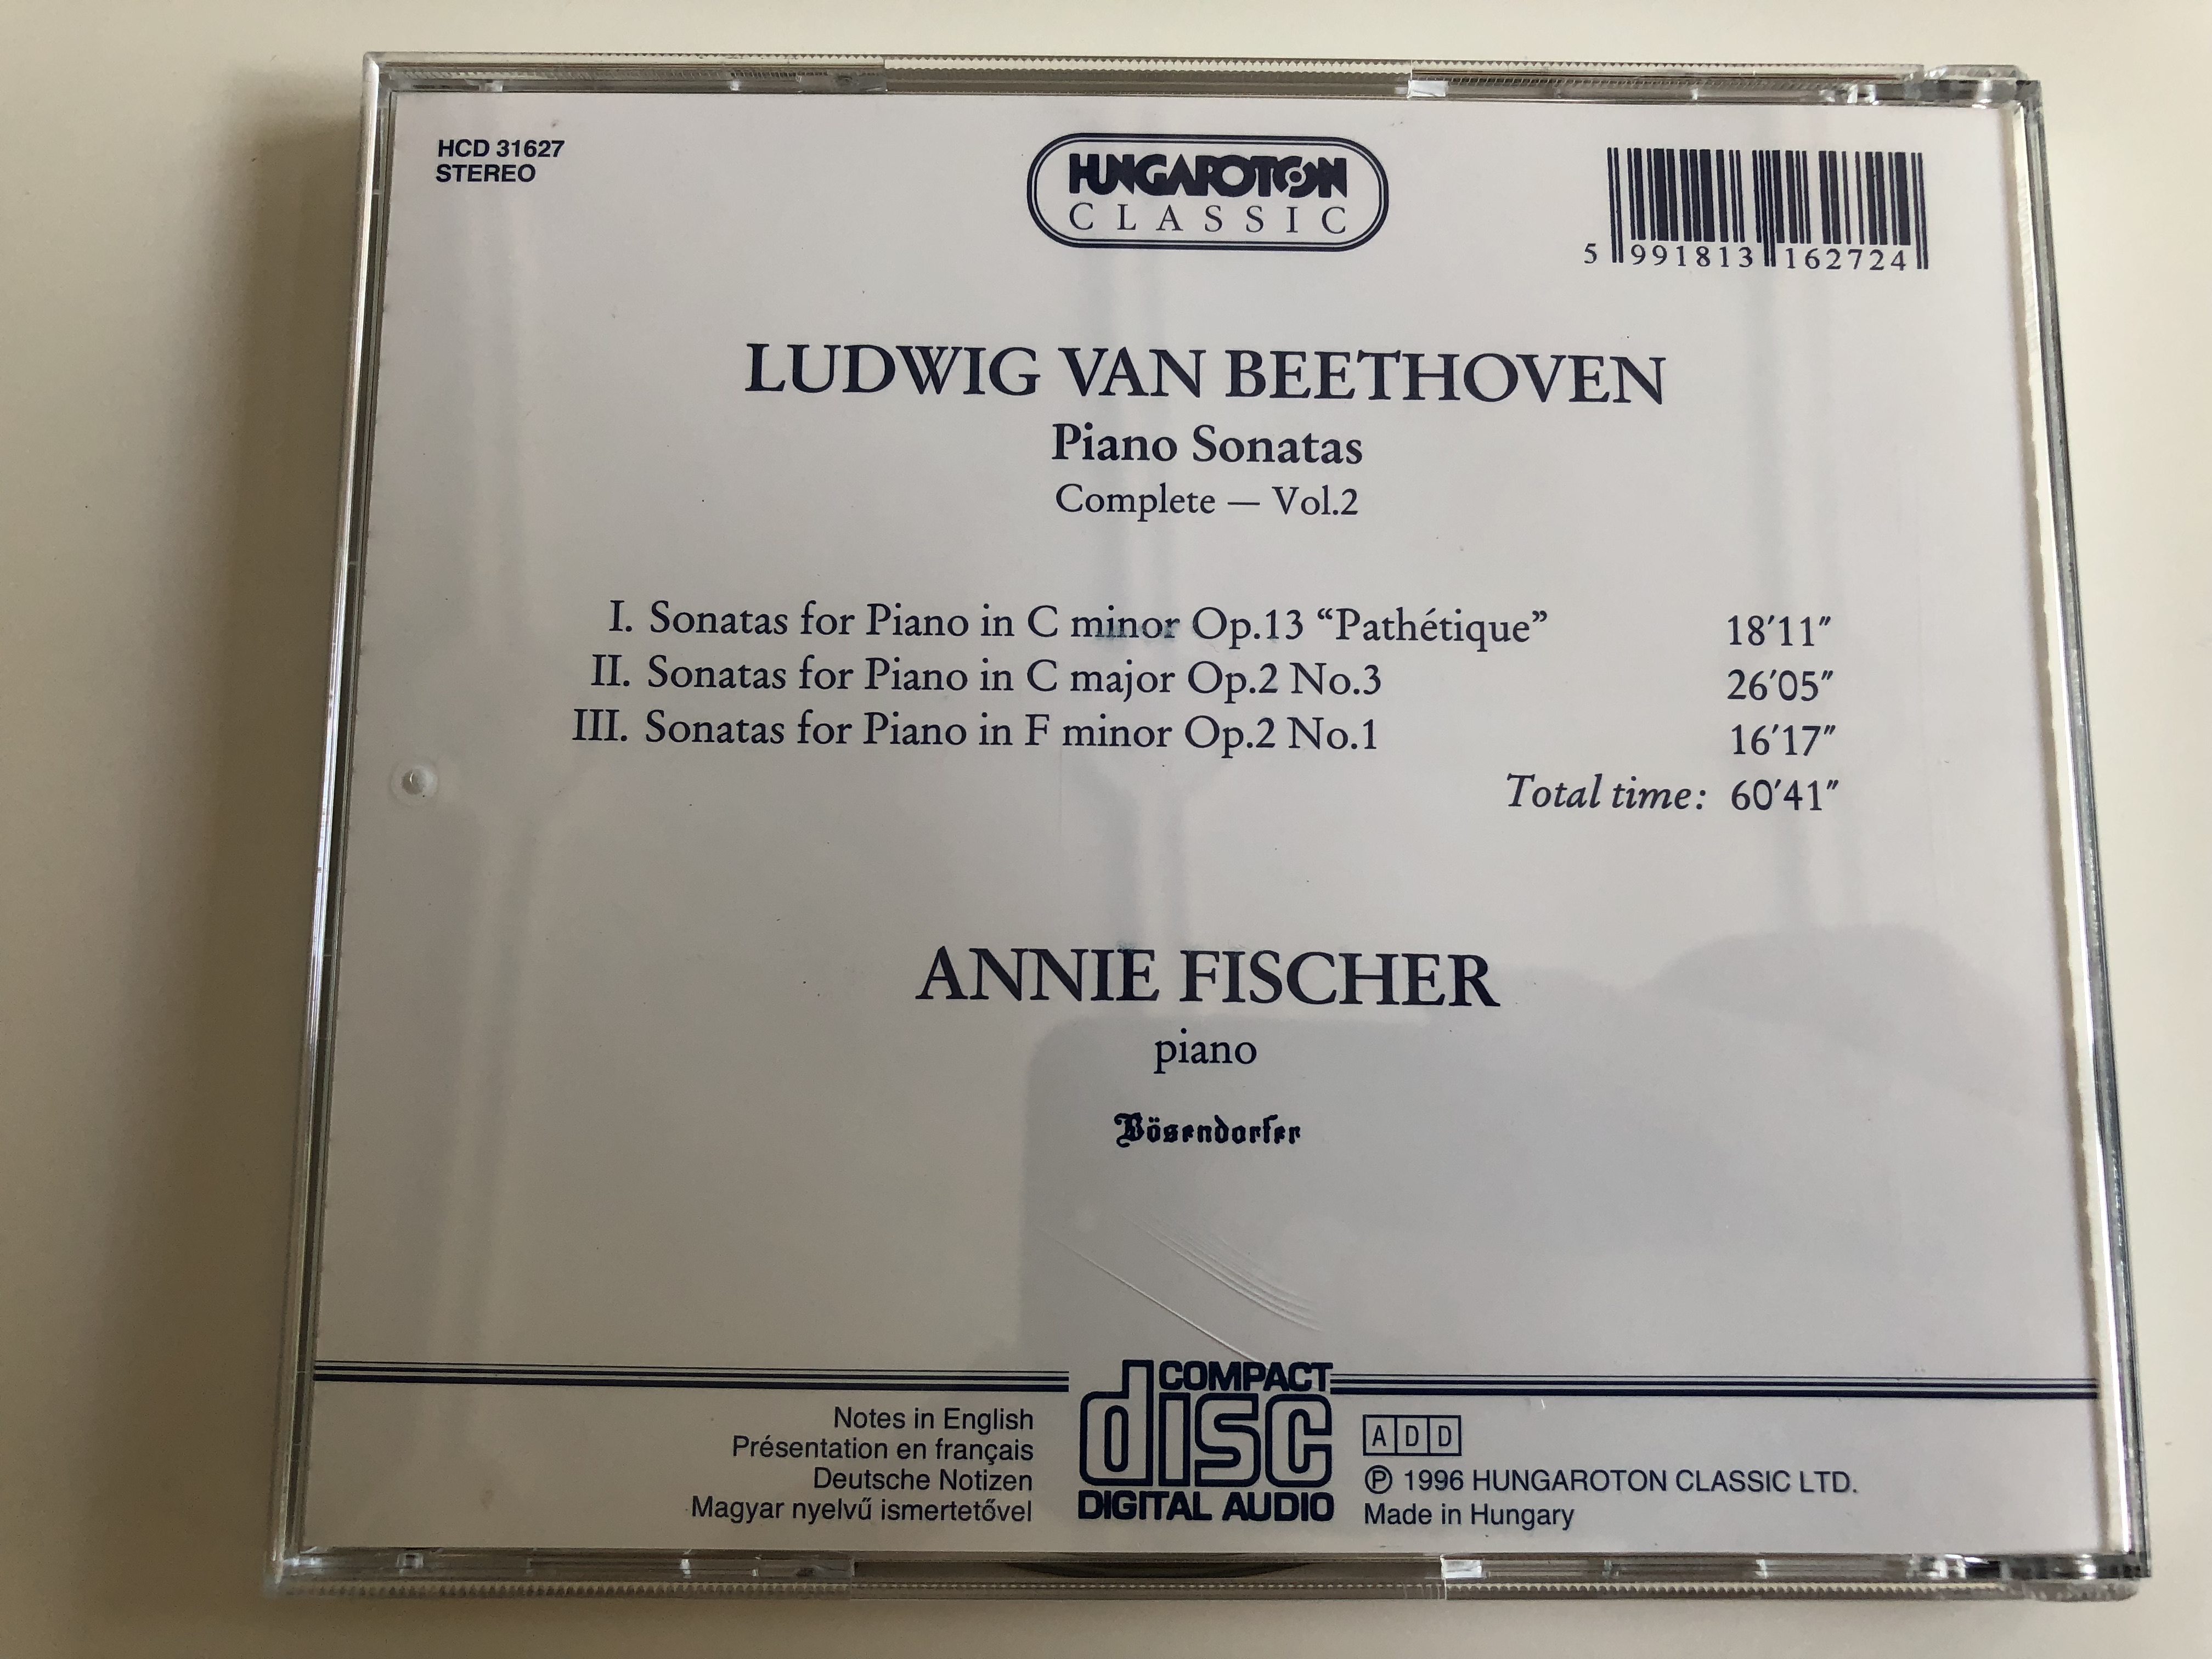 Annie Fischer - Beethoven Piano Sonatas - Complete Vol. 2 / C Minor Op. 13  "Pathetique", C Major Op. 2 No.3, F Minor Op. 2 No.1 / Audio CD 1996 /  Hungaroton Classic / HCD 31627 - bibleinmylanguage